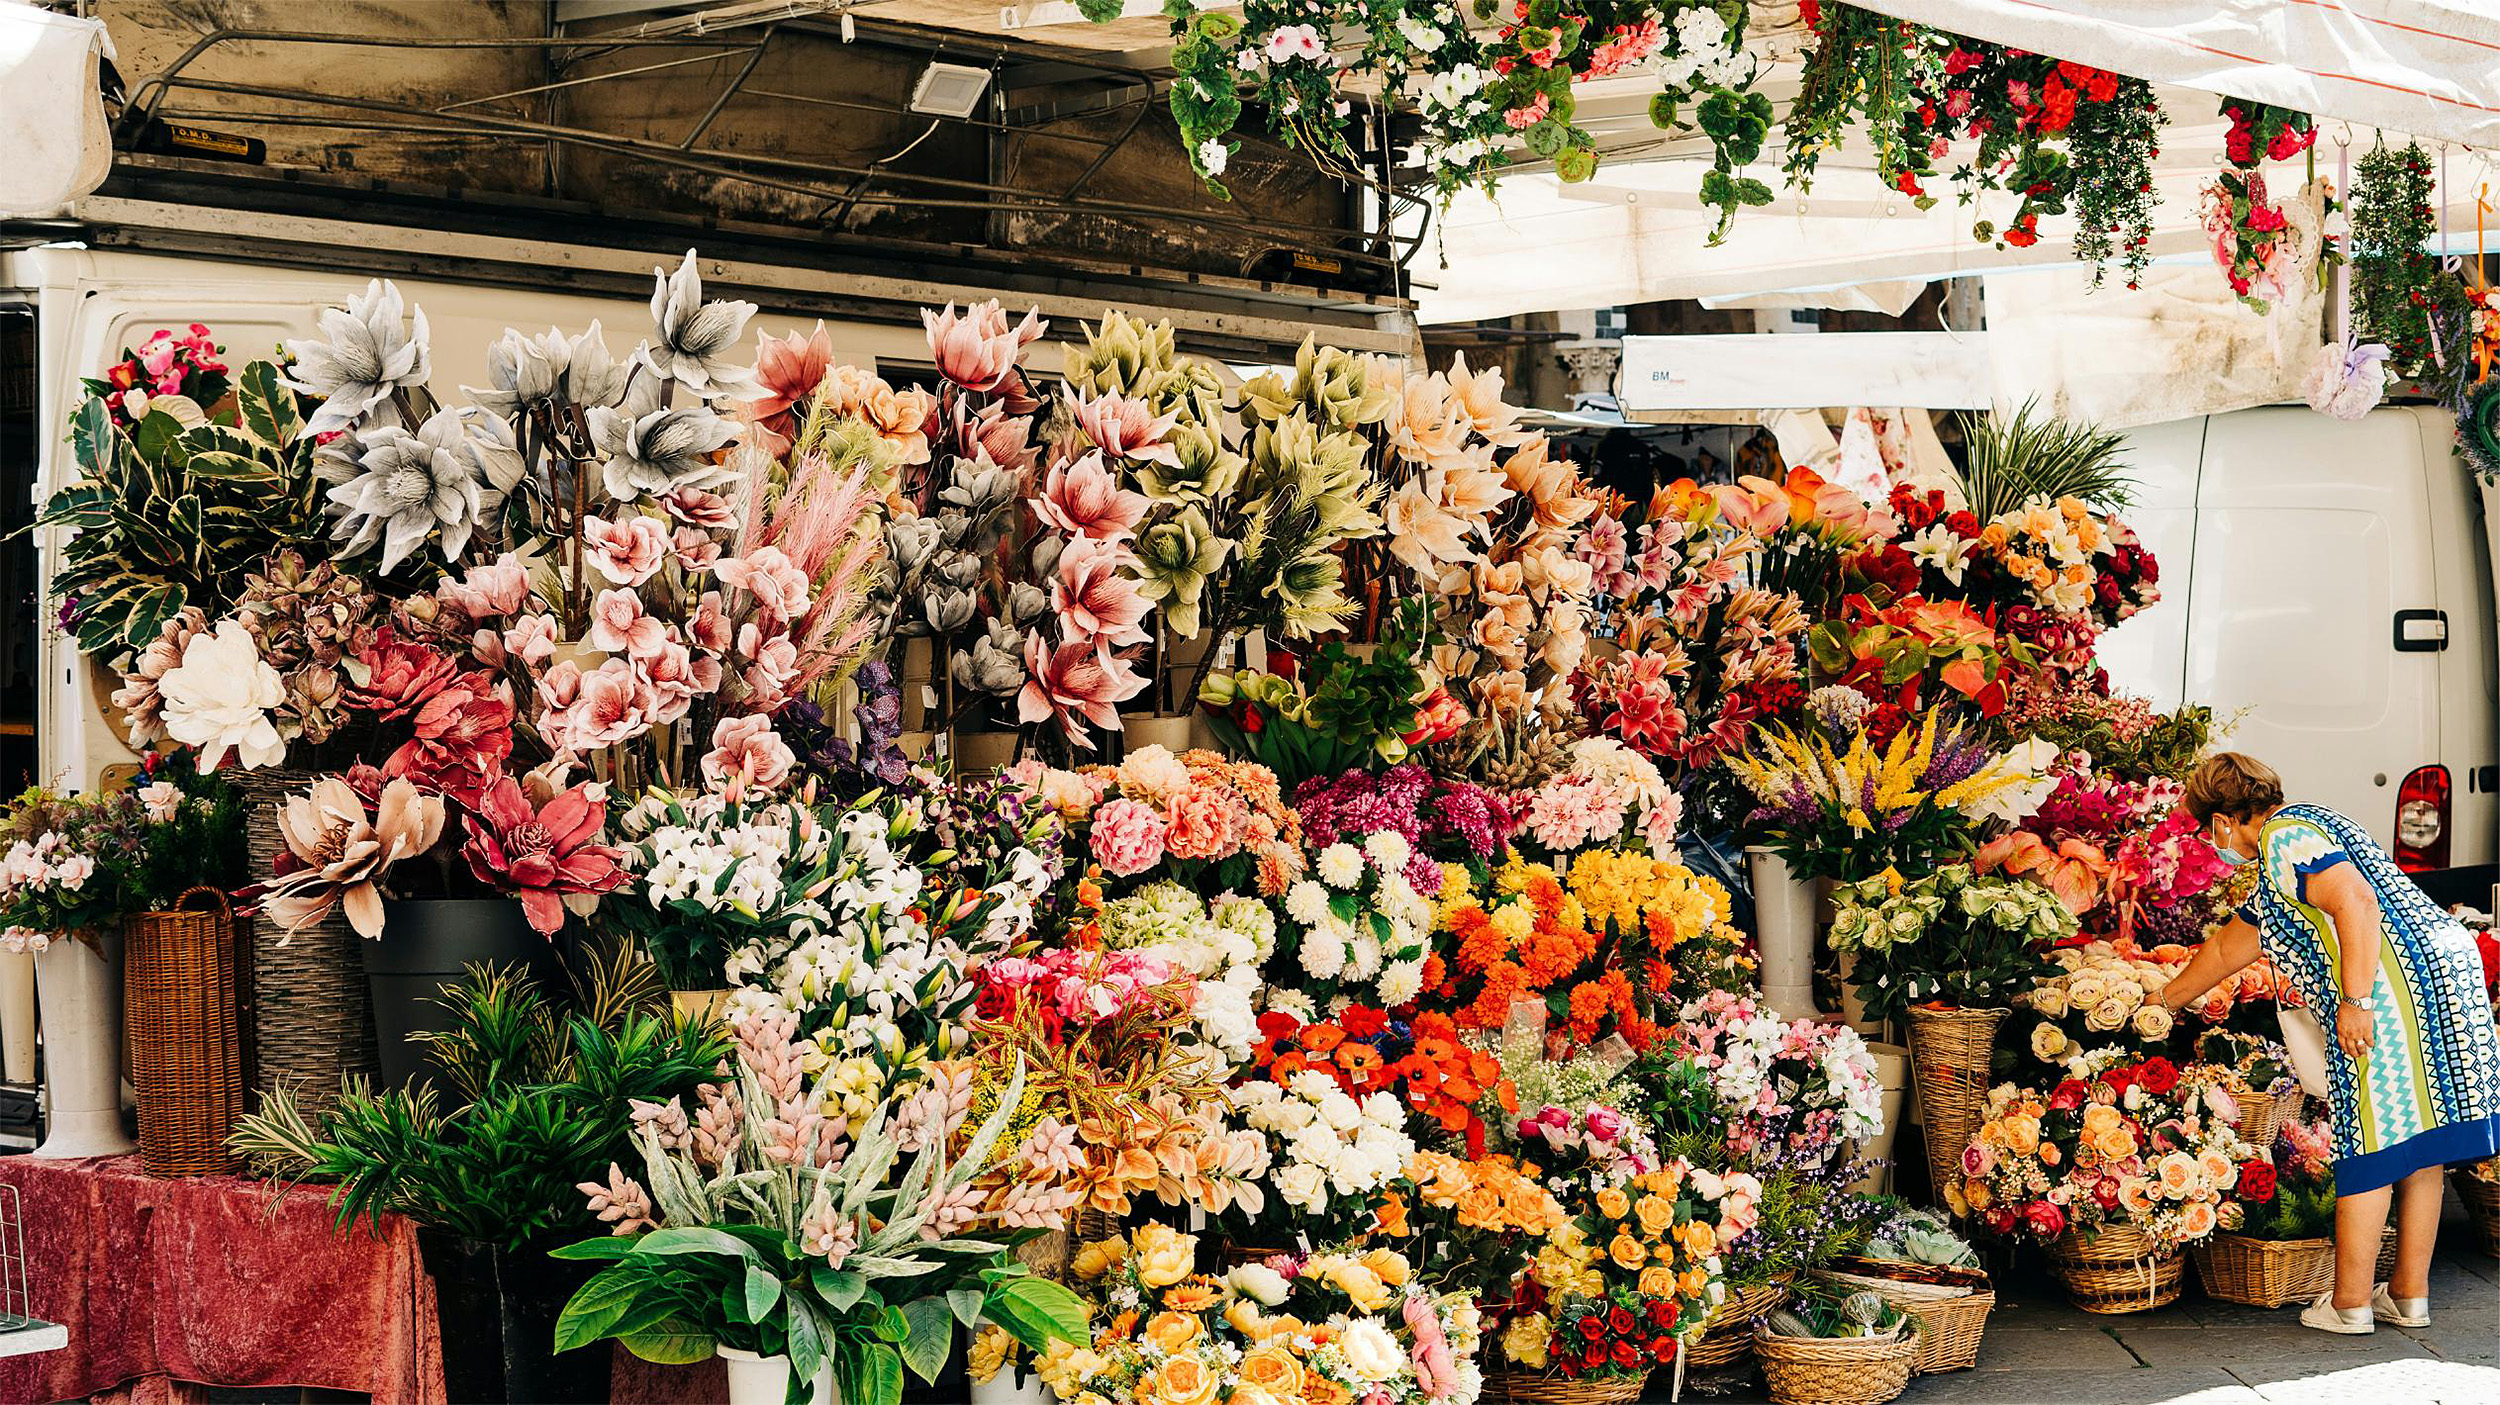 A Spring Flower Market in the Mediterranean